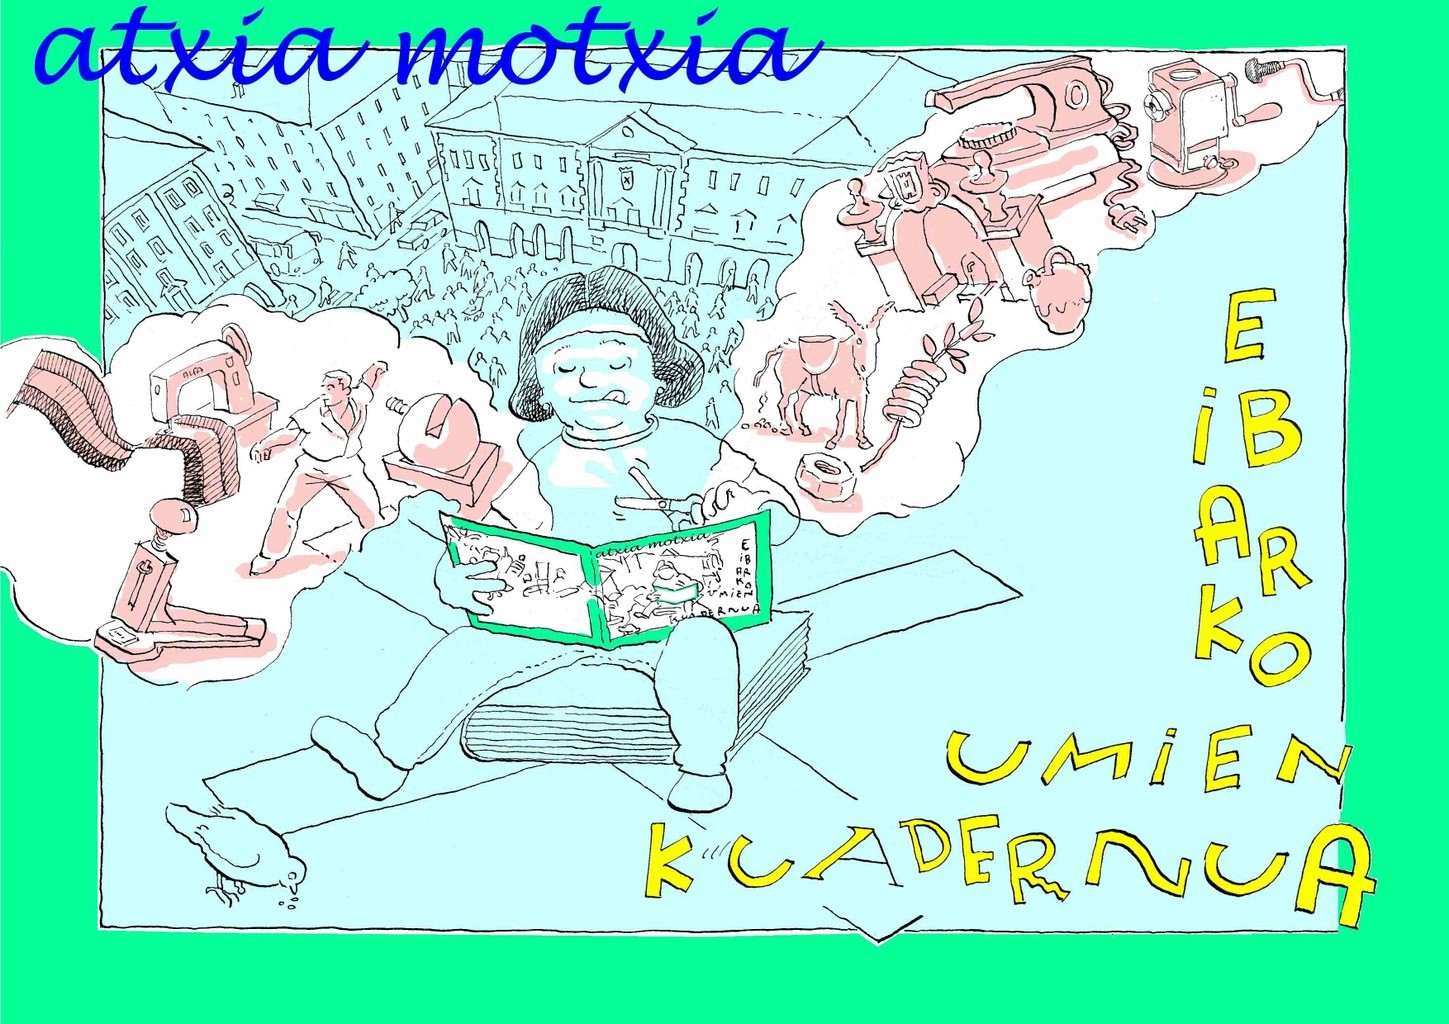 El Ayuntamiento de Eibar repartirá el cuaderno infantil “Atxia motxia” en todos los centros de Primaria.